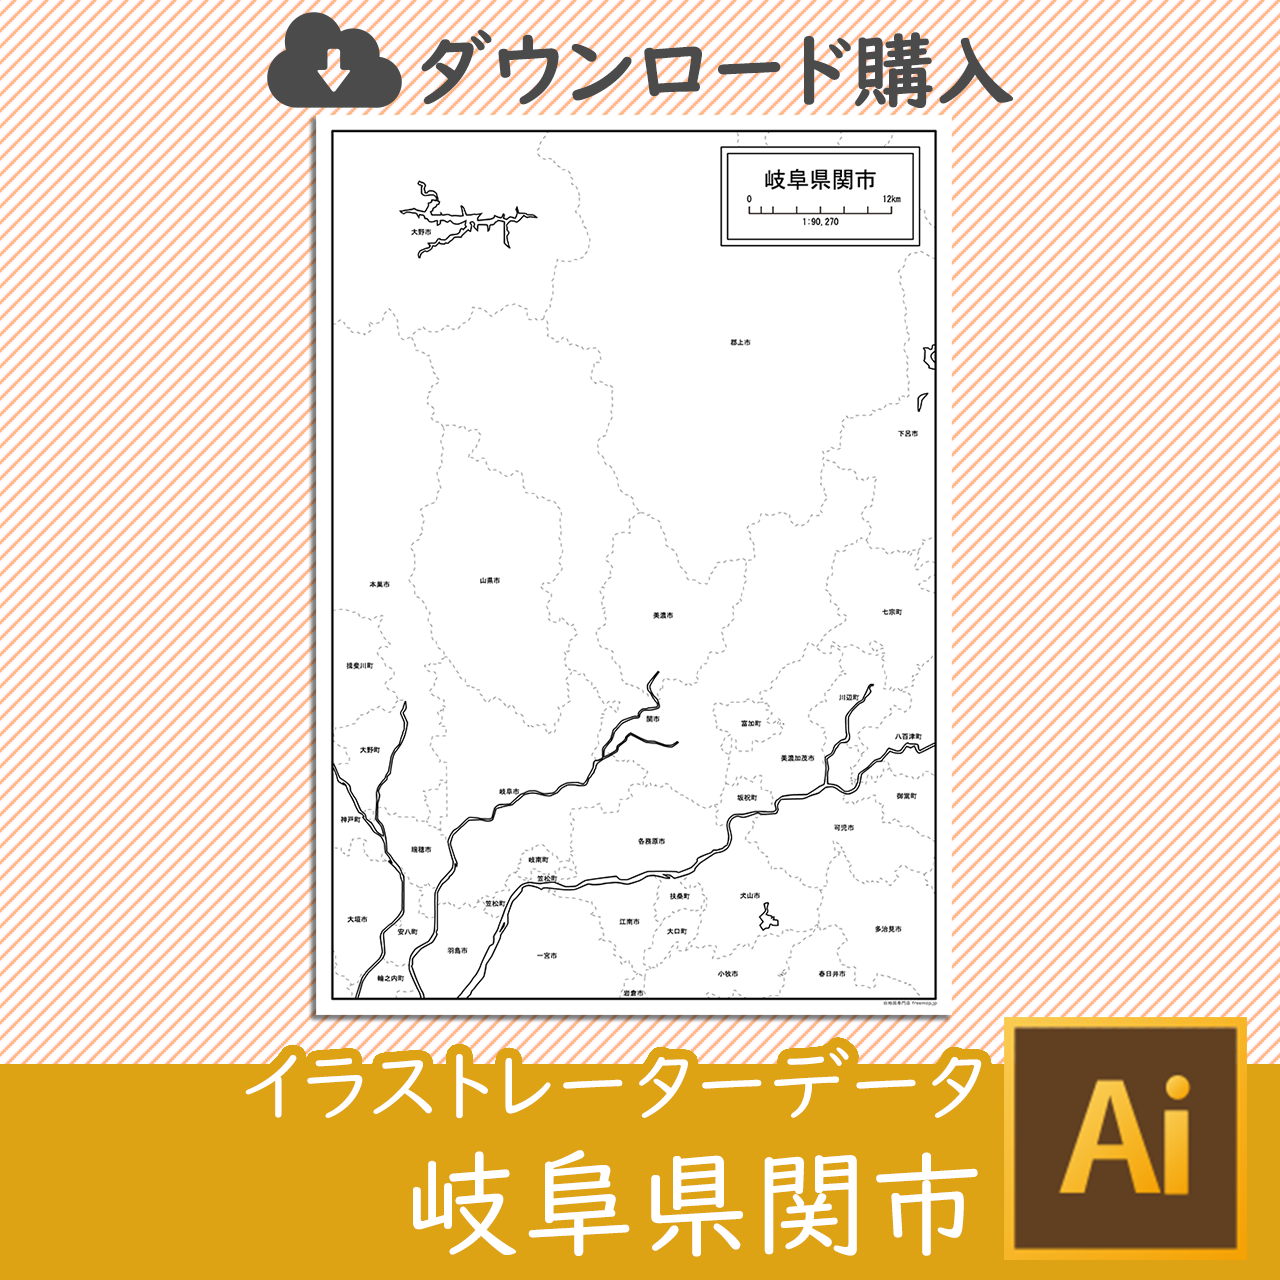 関市のaiデータのサムネイル画像